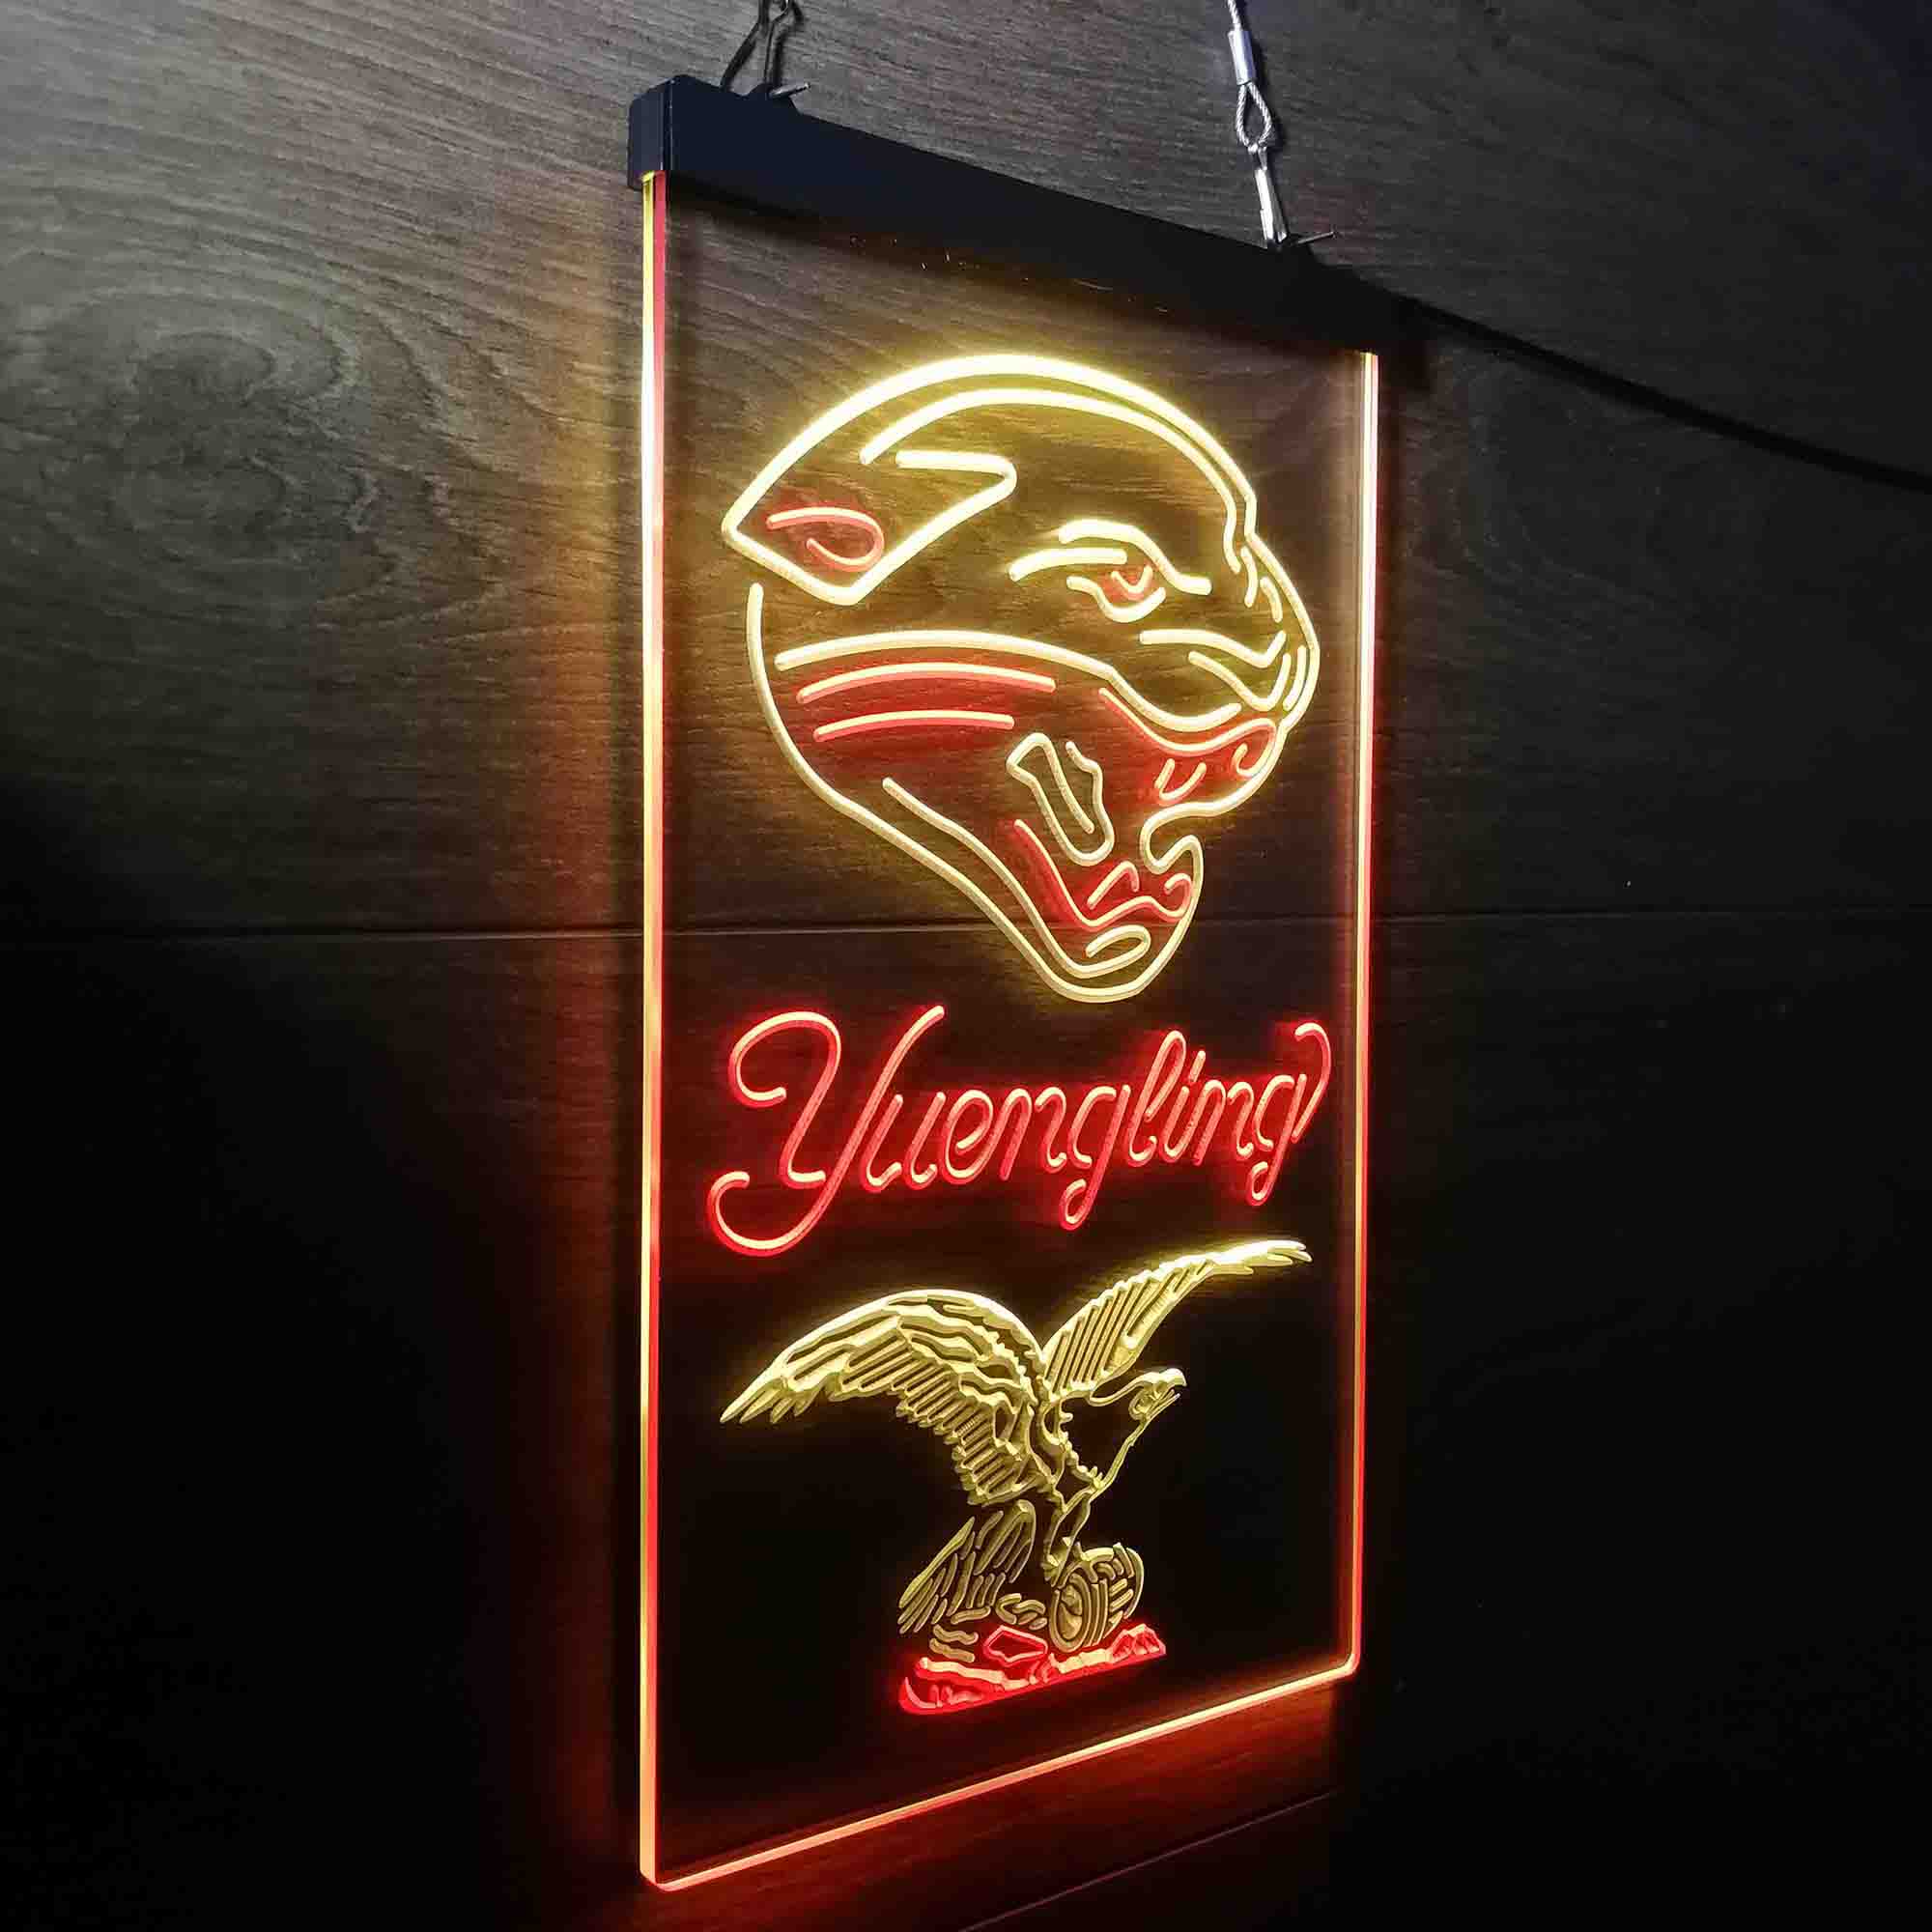 Yuengling Bar Jacksonville Jaguars Est. 1995 LED Neon Sign